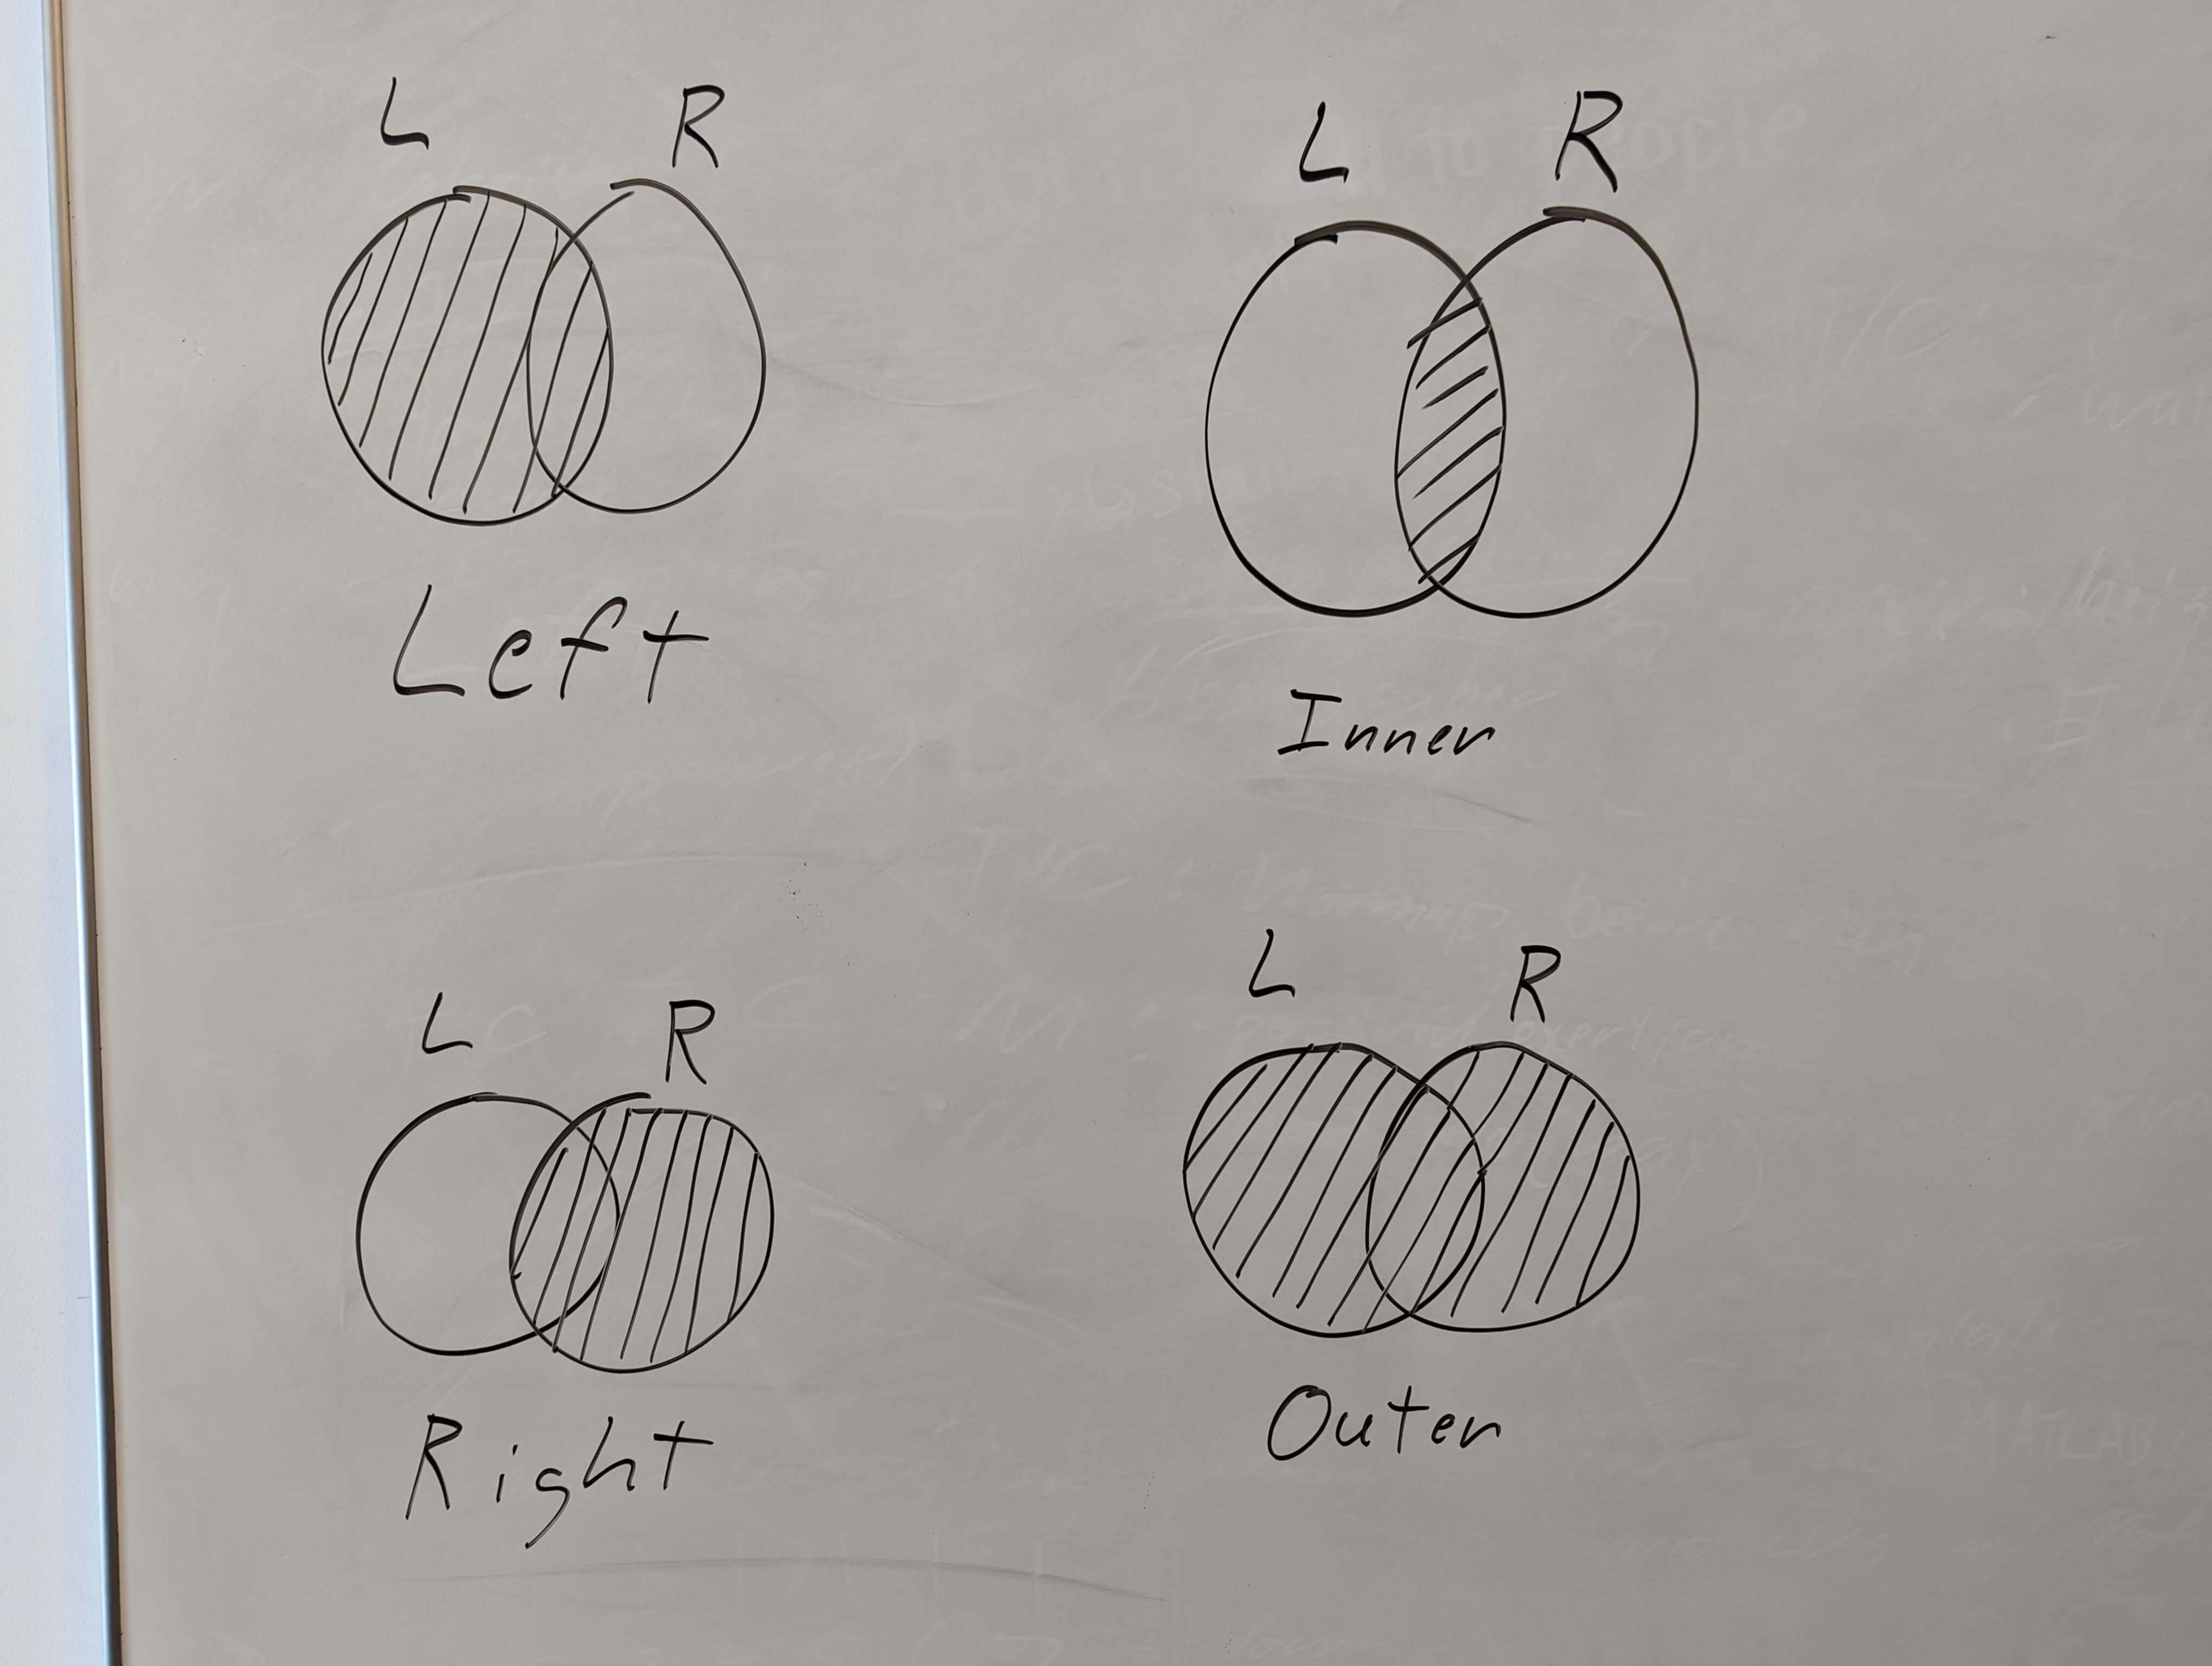 Venn diagrams for four types of joins: left, right, inner, outer